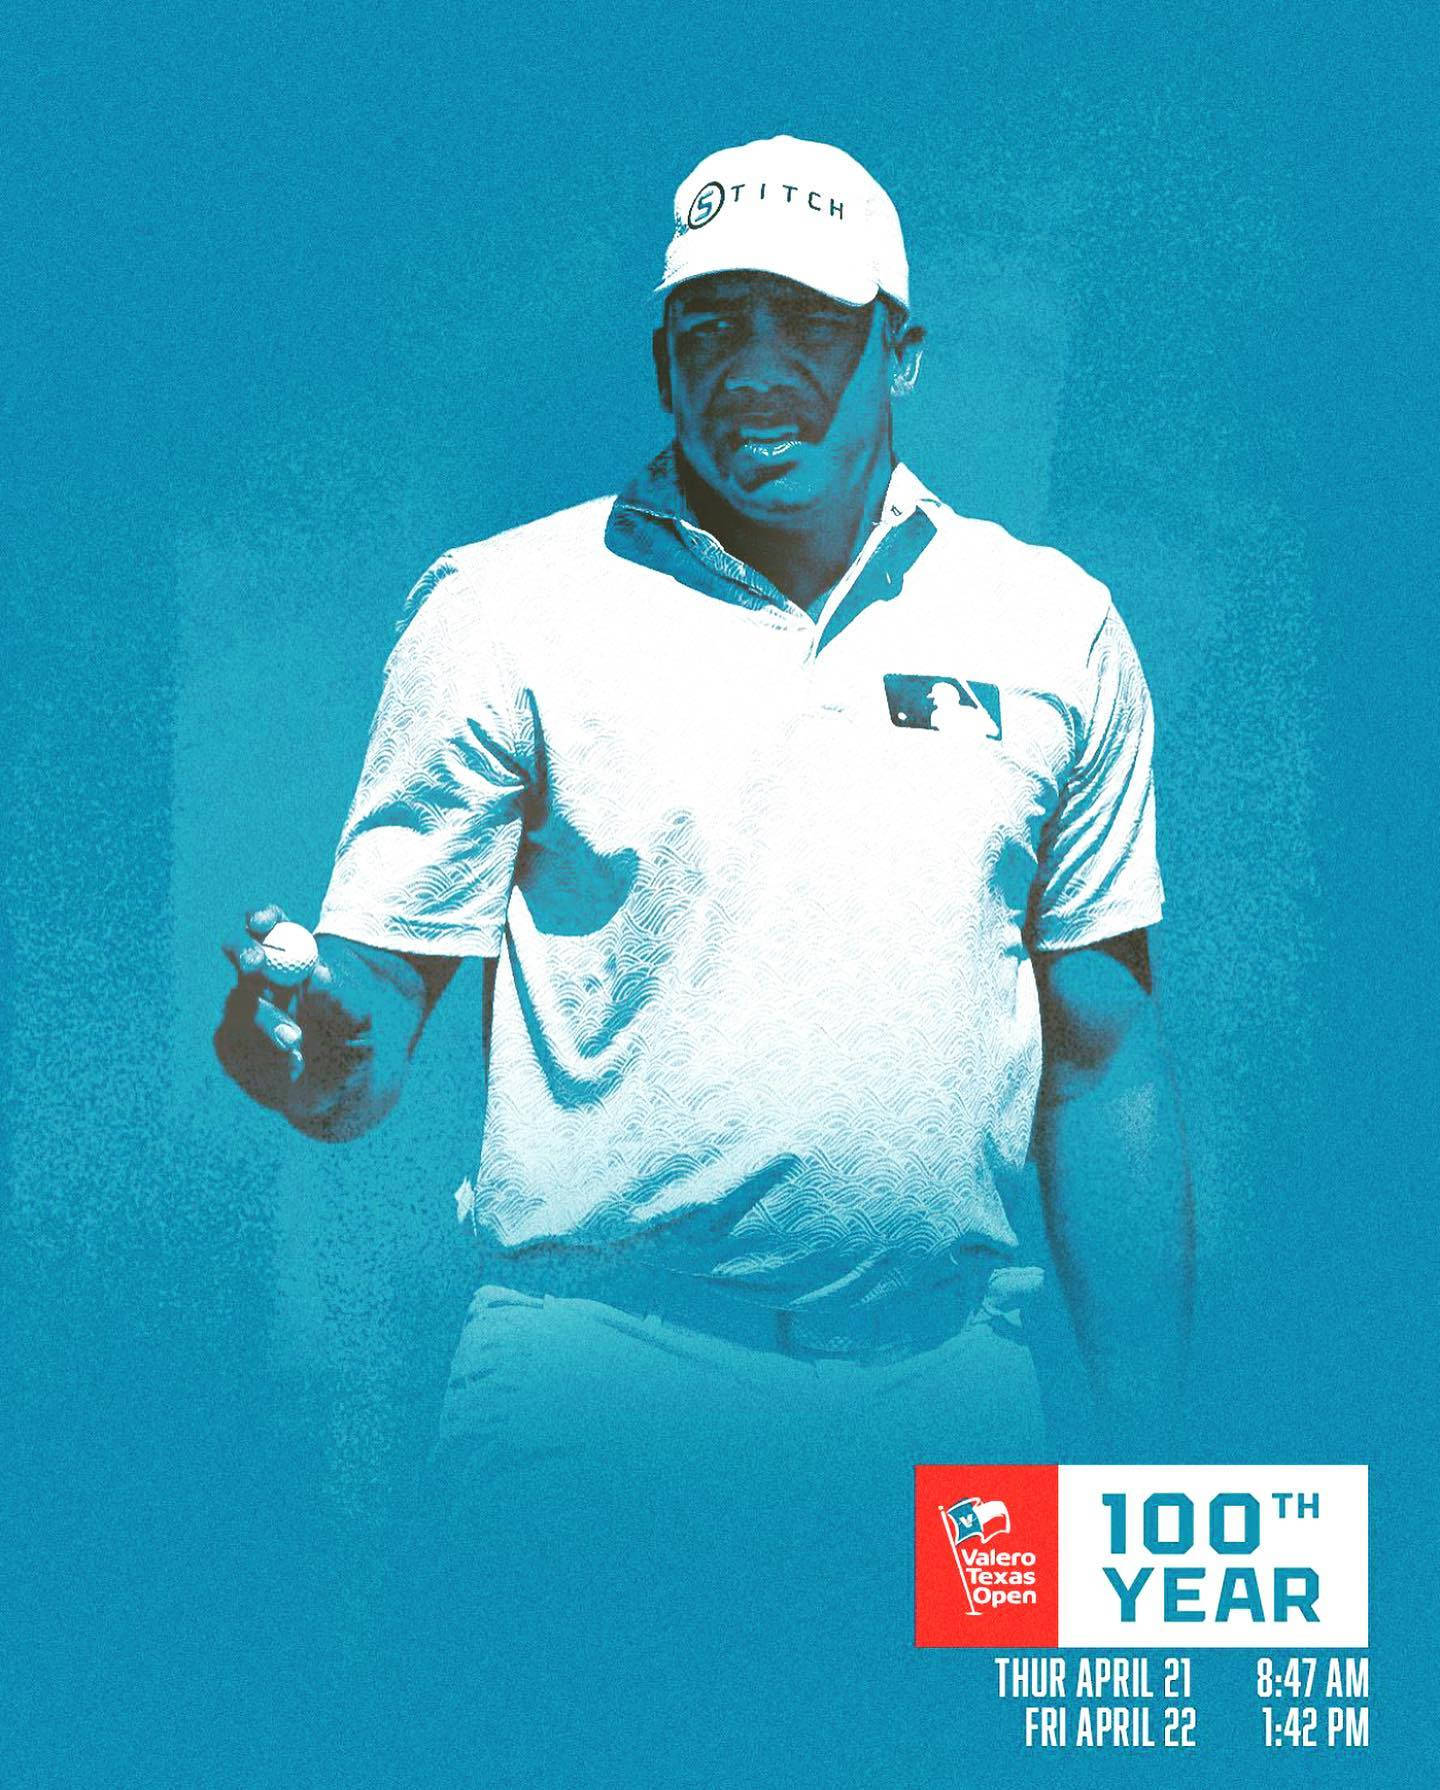 Jhonattan Vegas Golf Match Poster Wallpaper